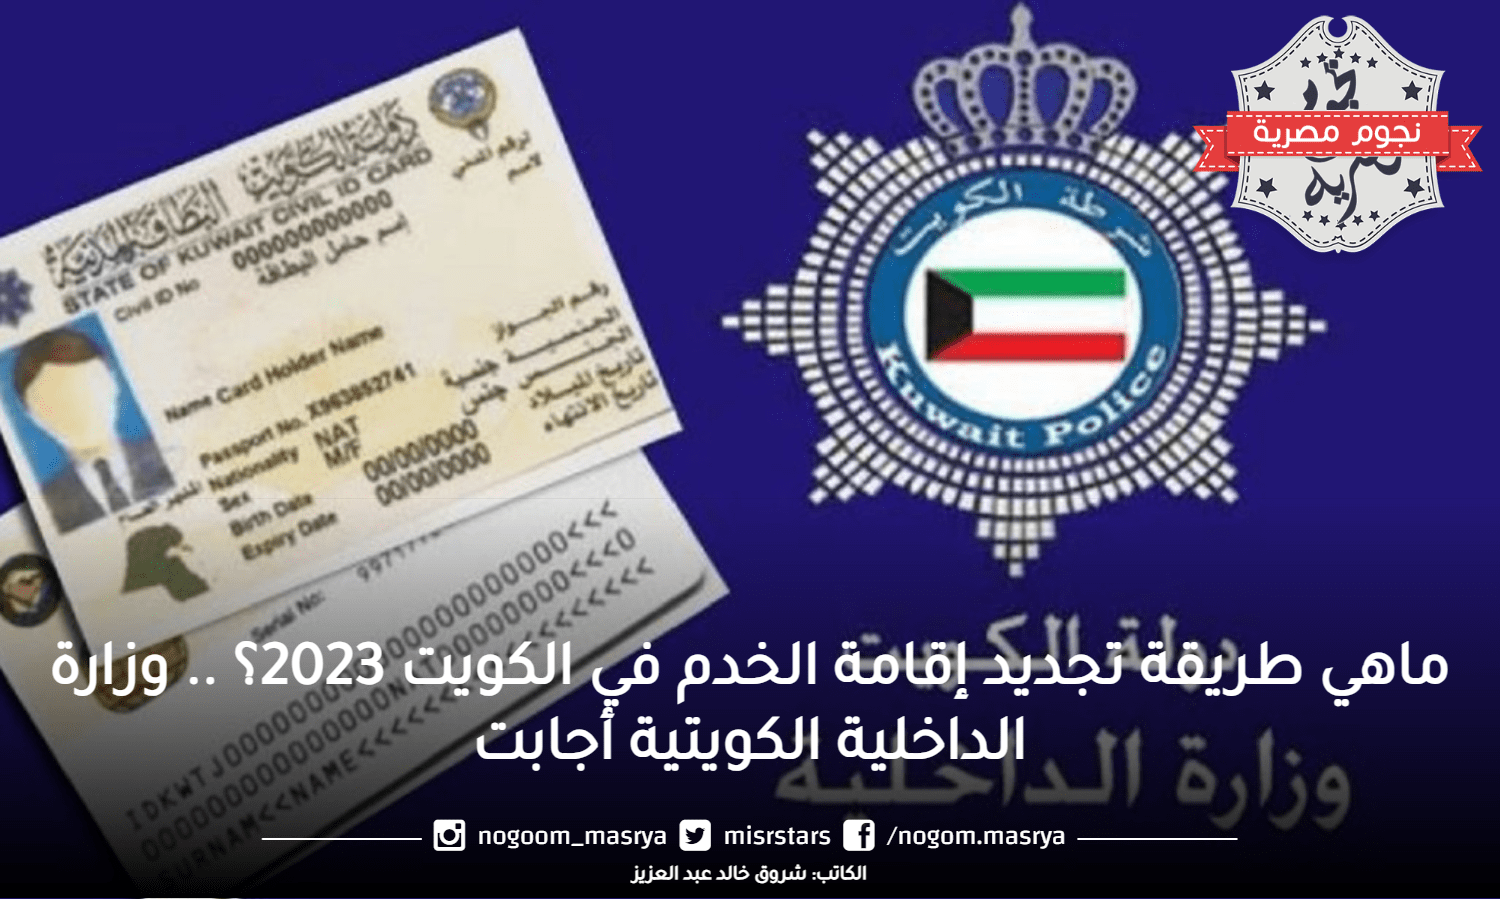 ماهي طريقة تجديد إقامة الخدم في الكويت 2023؟ .. وزارة الداخلية الكويتية أجابت